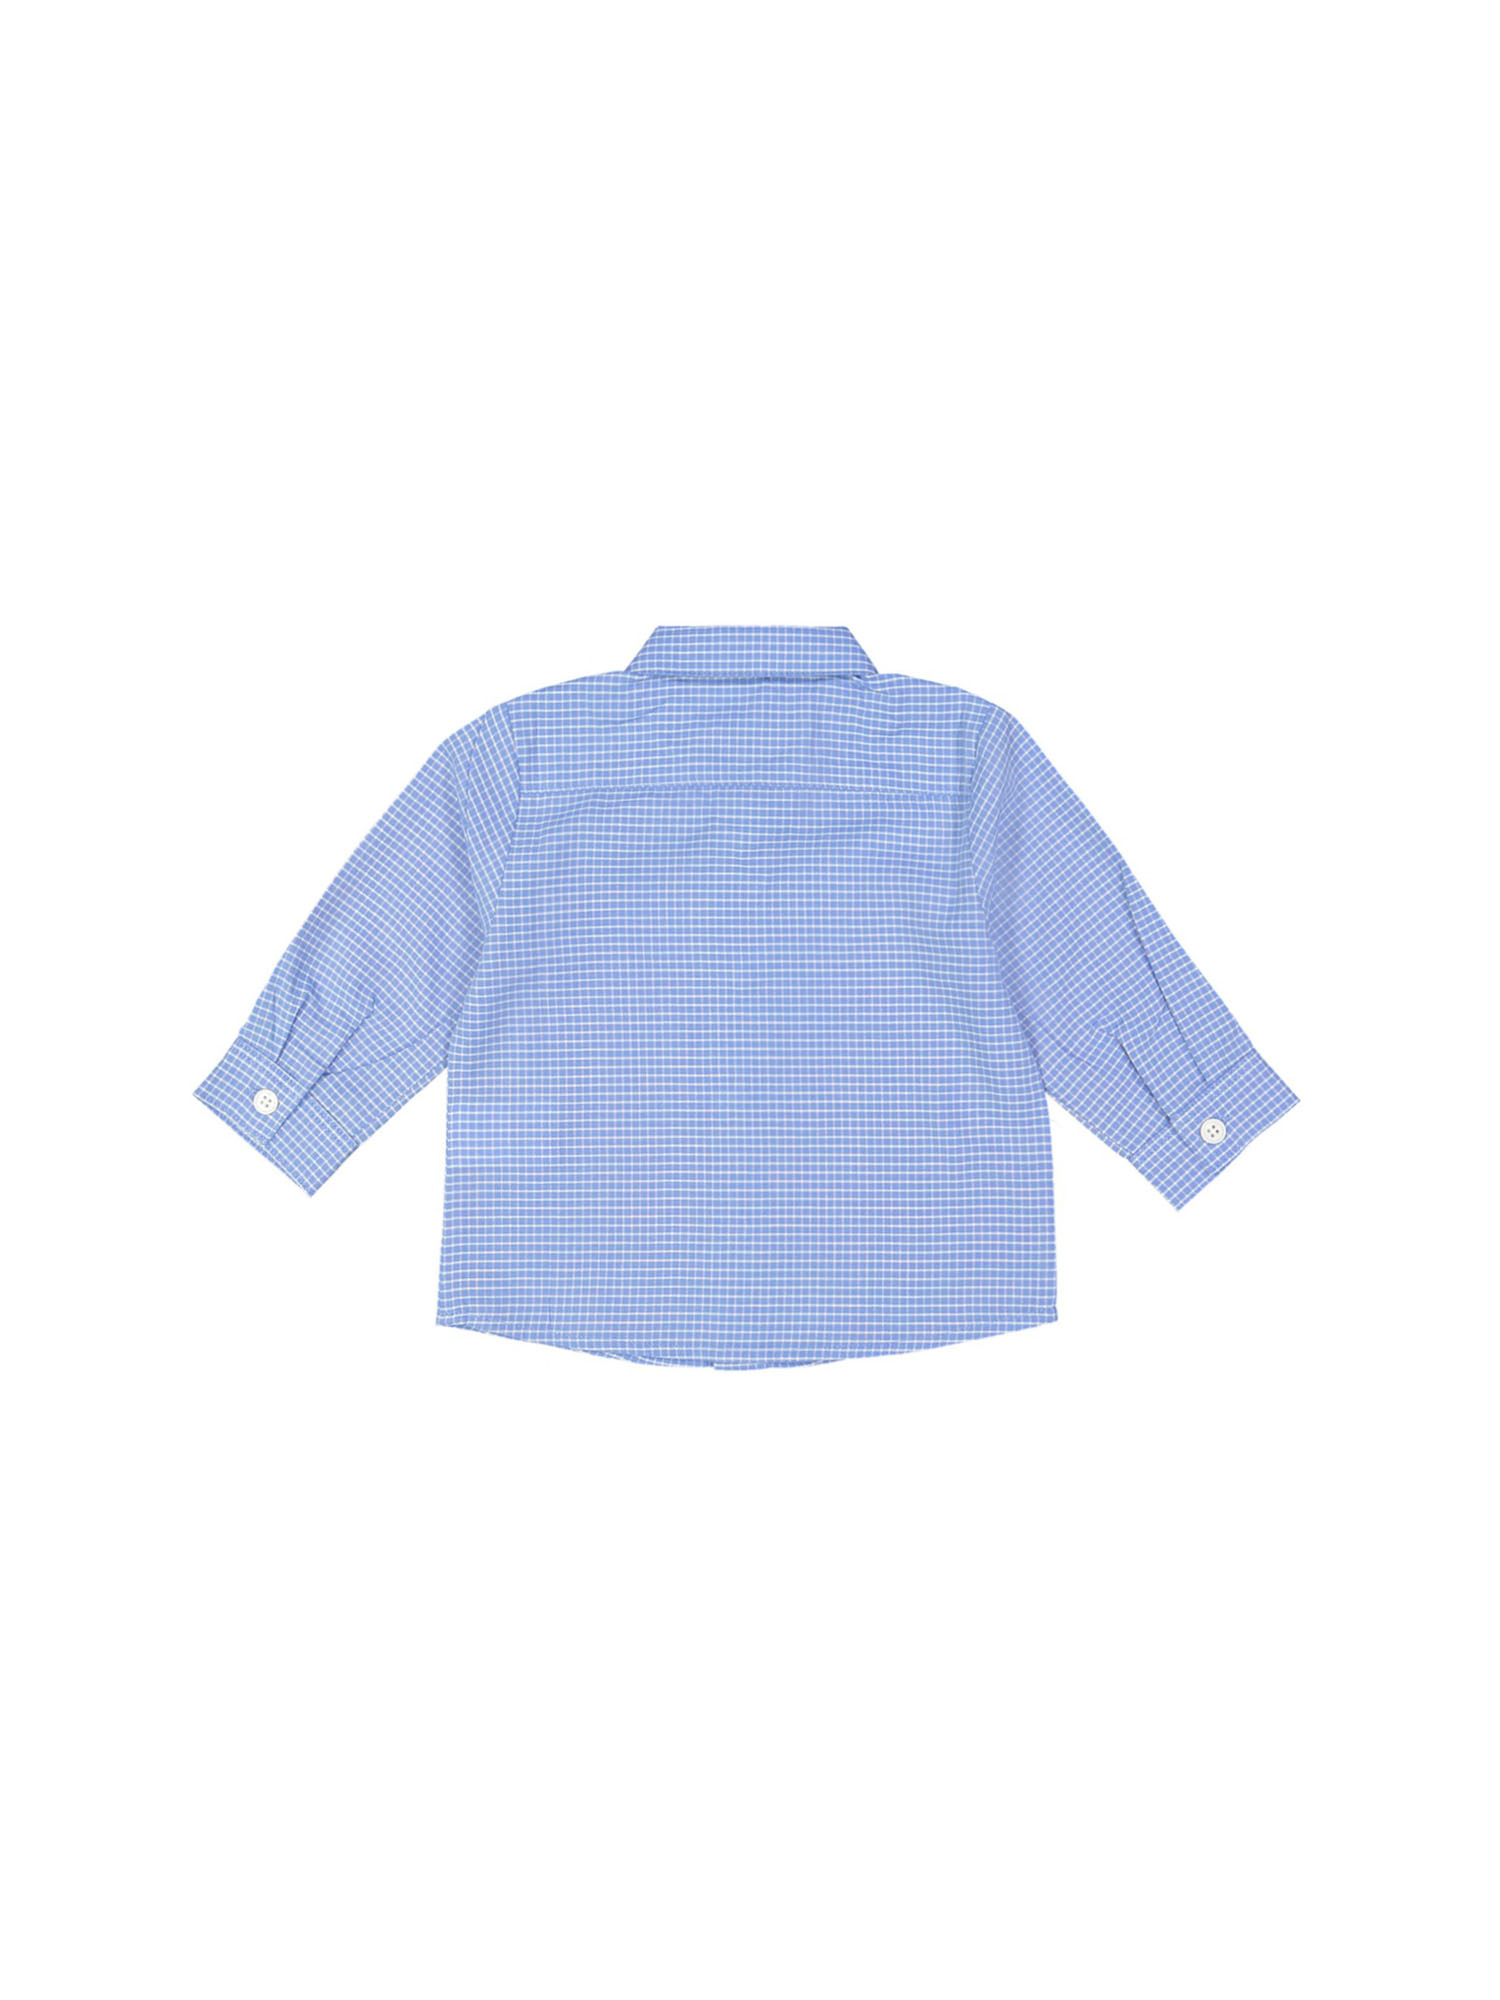 shirt mini checks blue